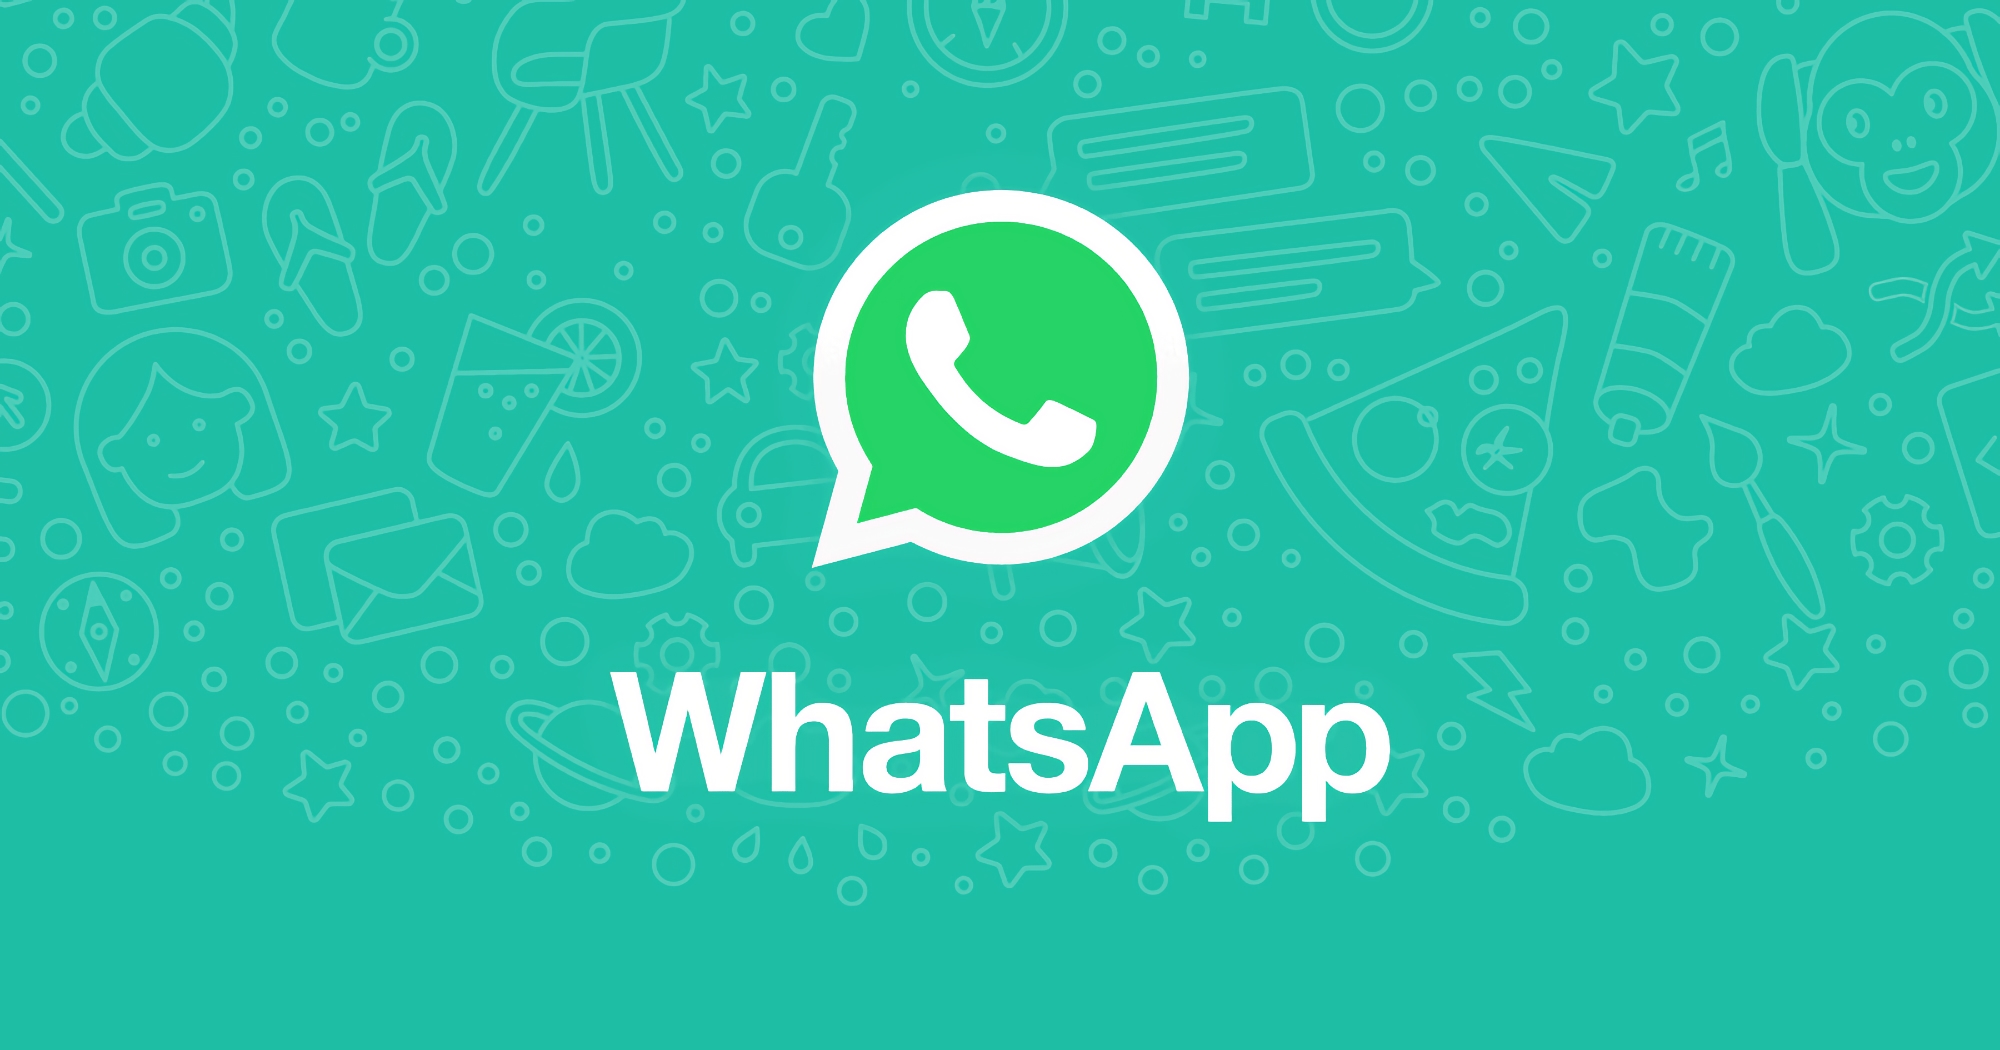 Come Telegram: WhatsApp sarà presto in grado di modificare i messaggi